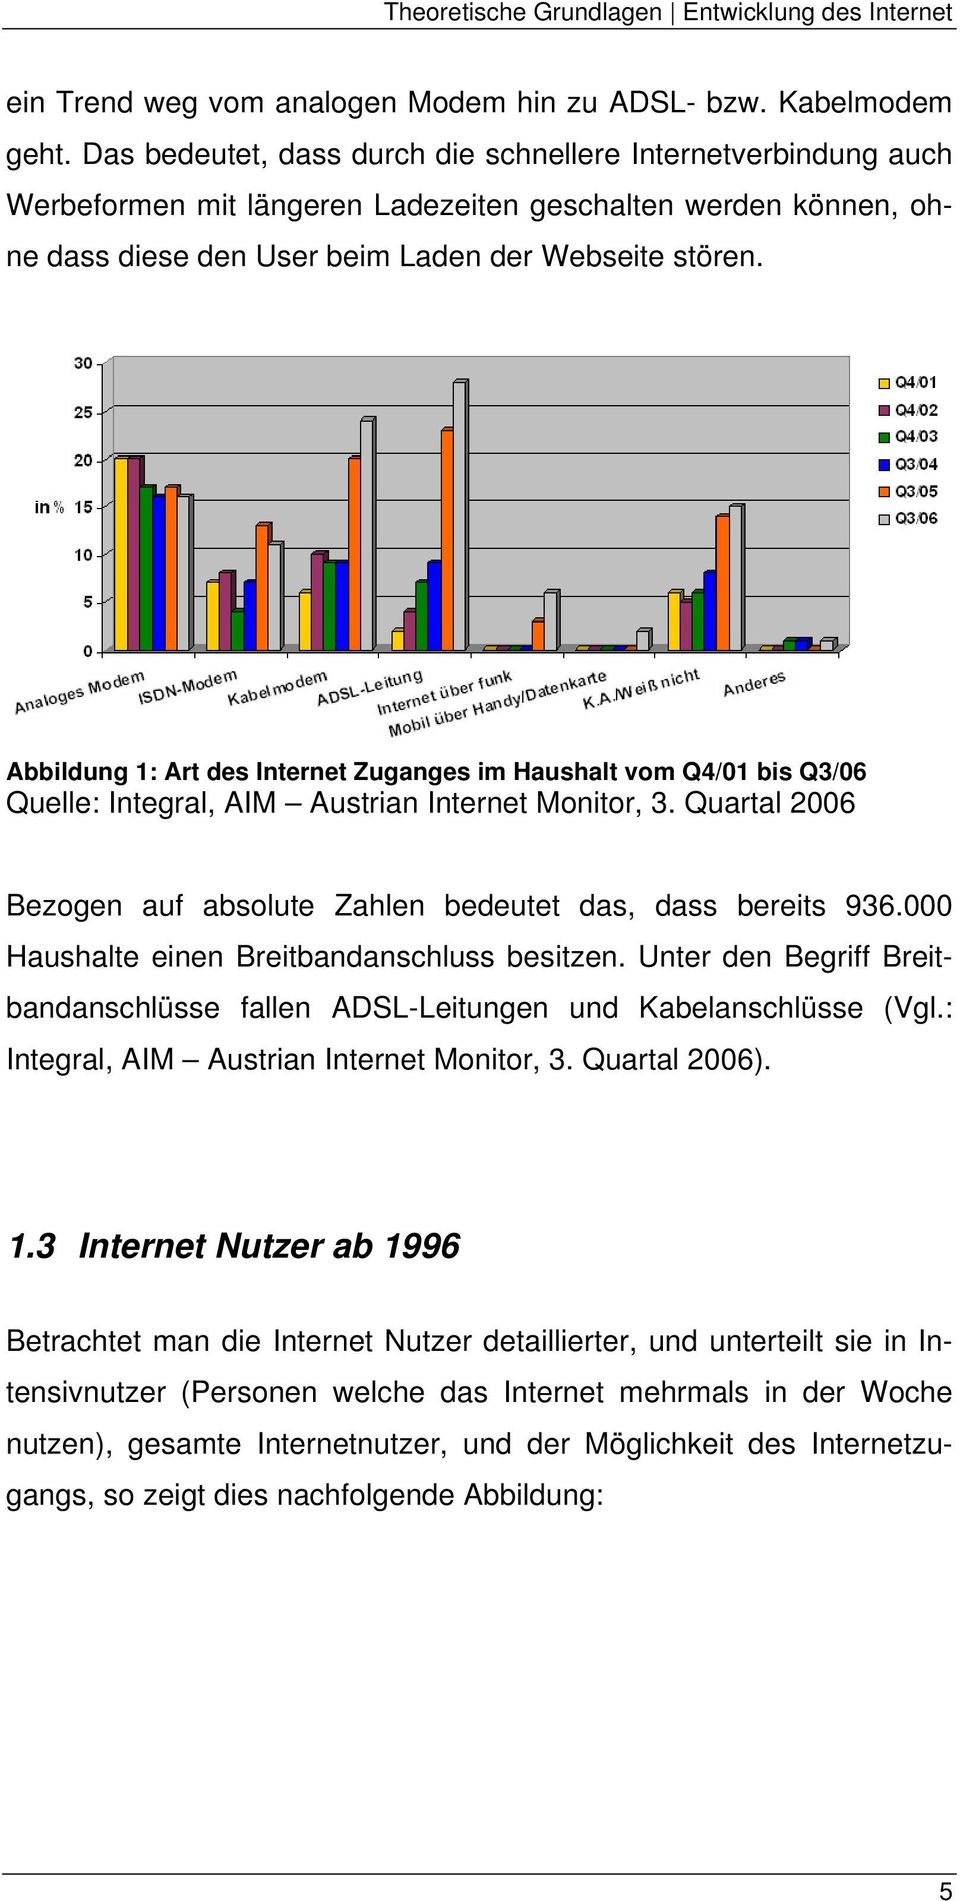 Abbildung 1: Art des Internet Zuganges im Haushalt vom Q4/01 bis Q3/06 Quelle: Integral, AIM Austrian Internet Monitor, 3. Quartal 2006 Bezogen auf absolute Zahlen bedeutet das, dass bereits 936.